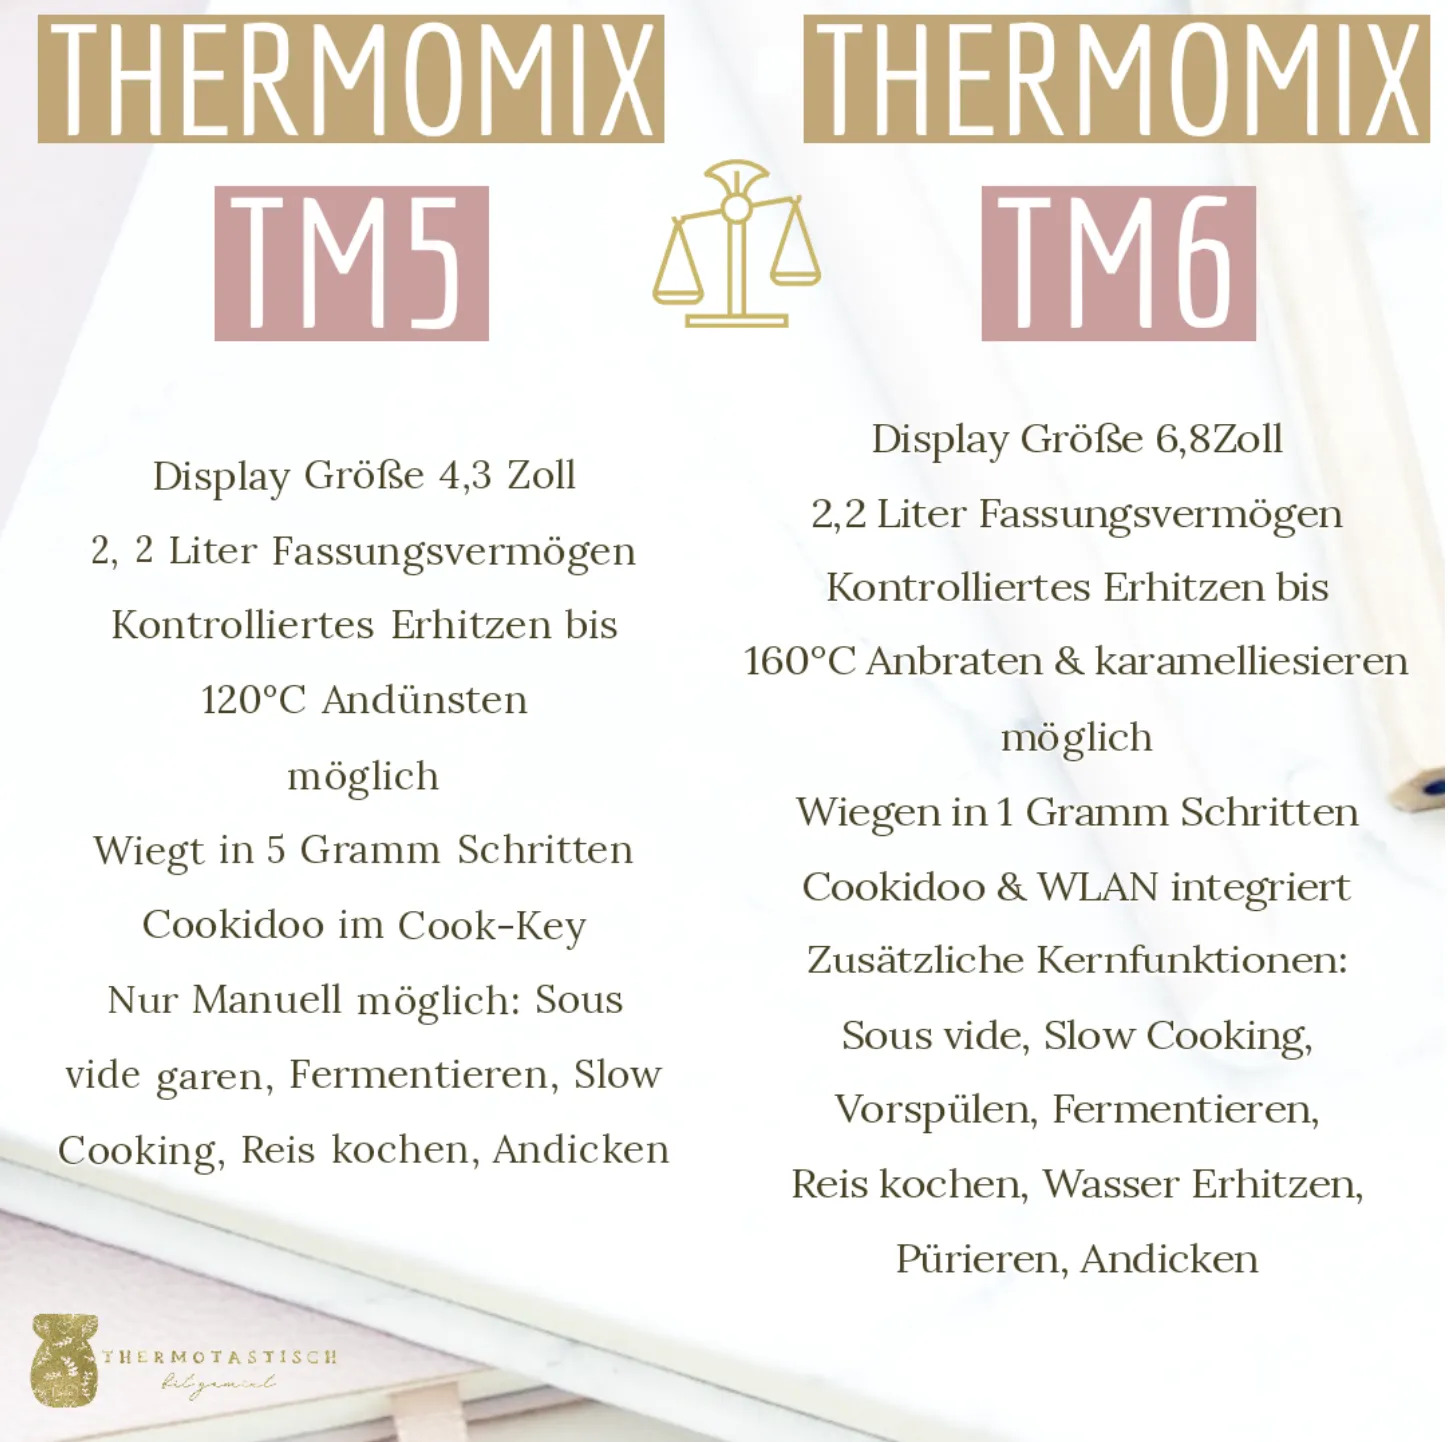 Hier habe ich für euch den ultimativen Thermomix® Vergleich zwischen dem TM5 vs TM6 ausgearbeitet | fitgemixt